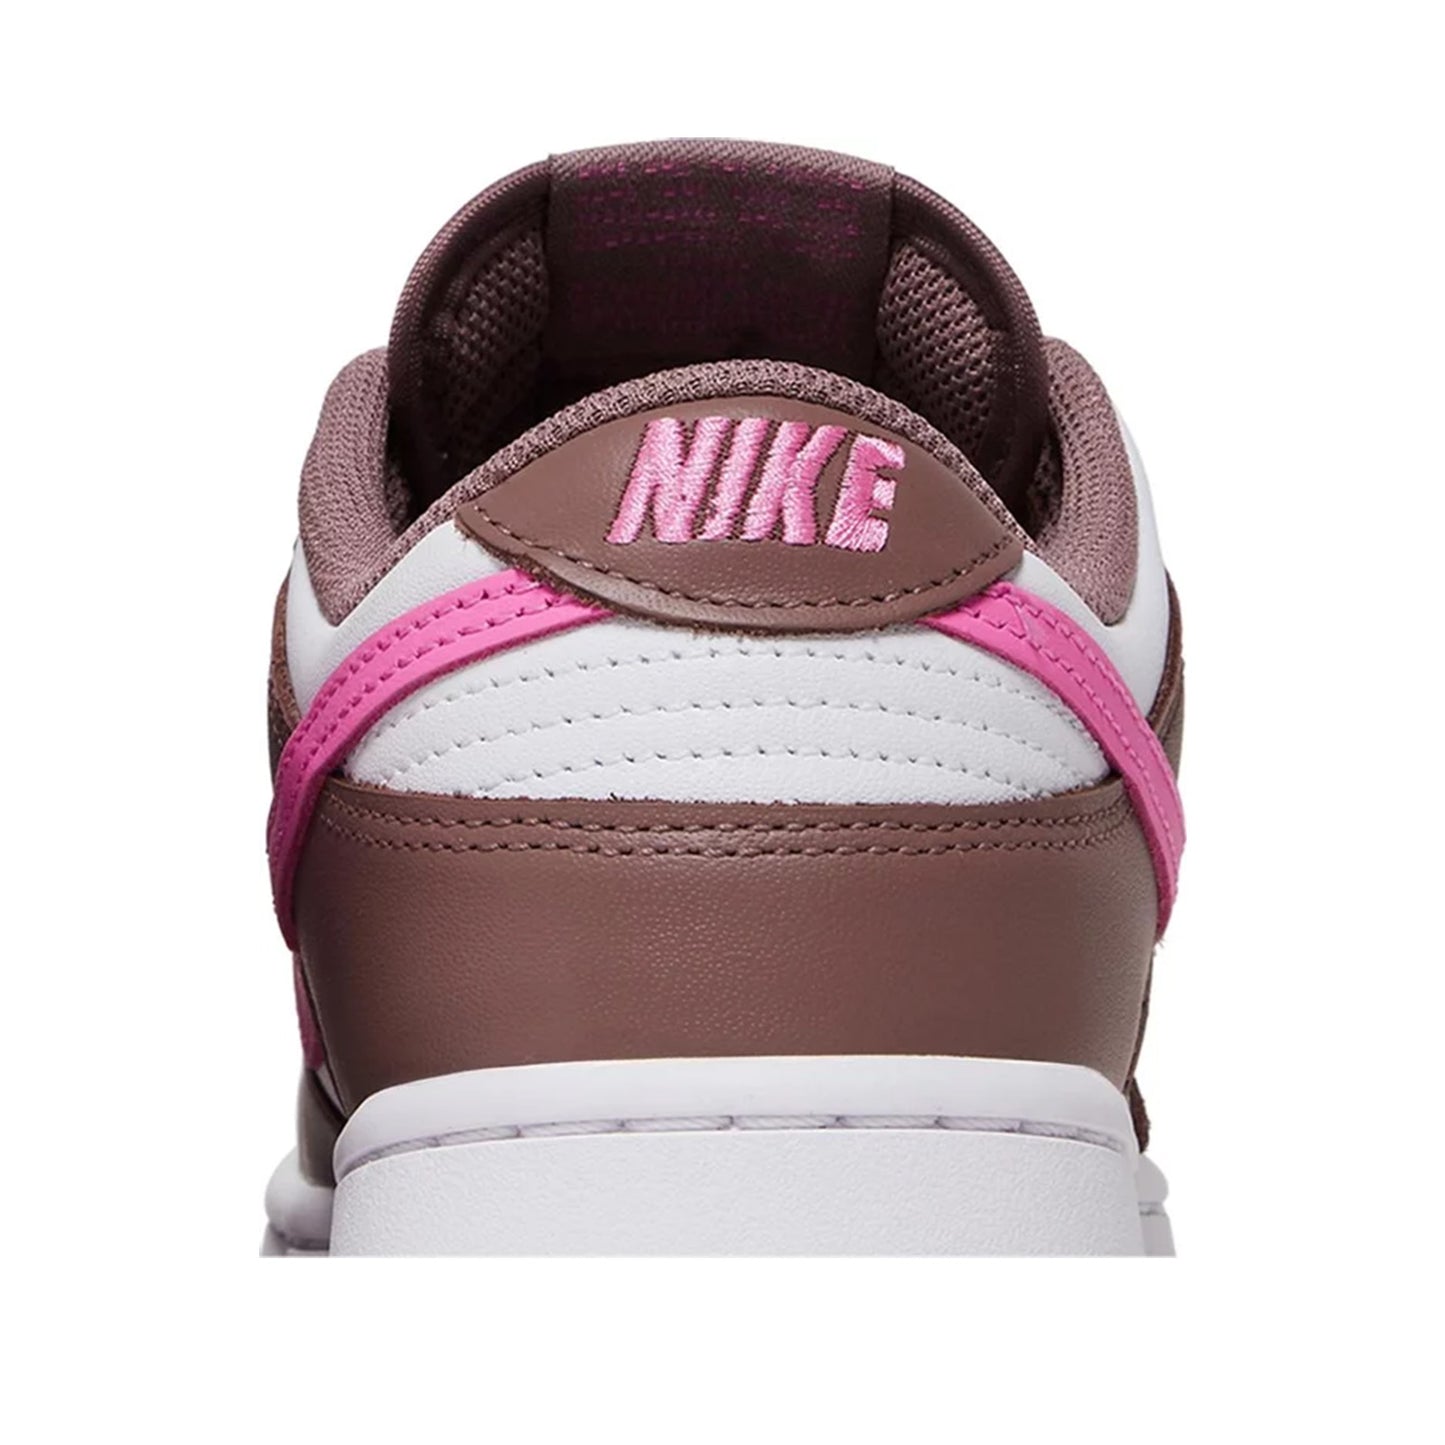 Women's Nike Dunk Low, Smokey Mauve Playful Pink